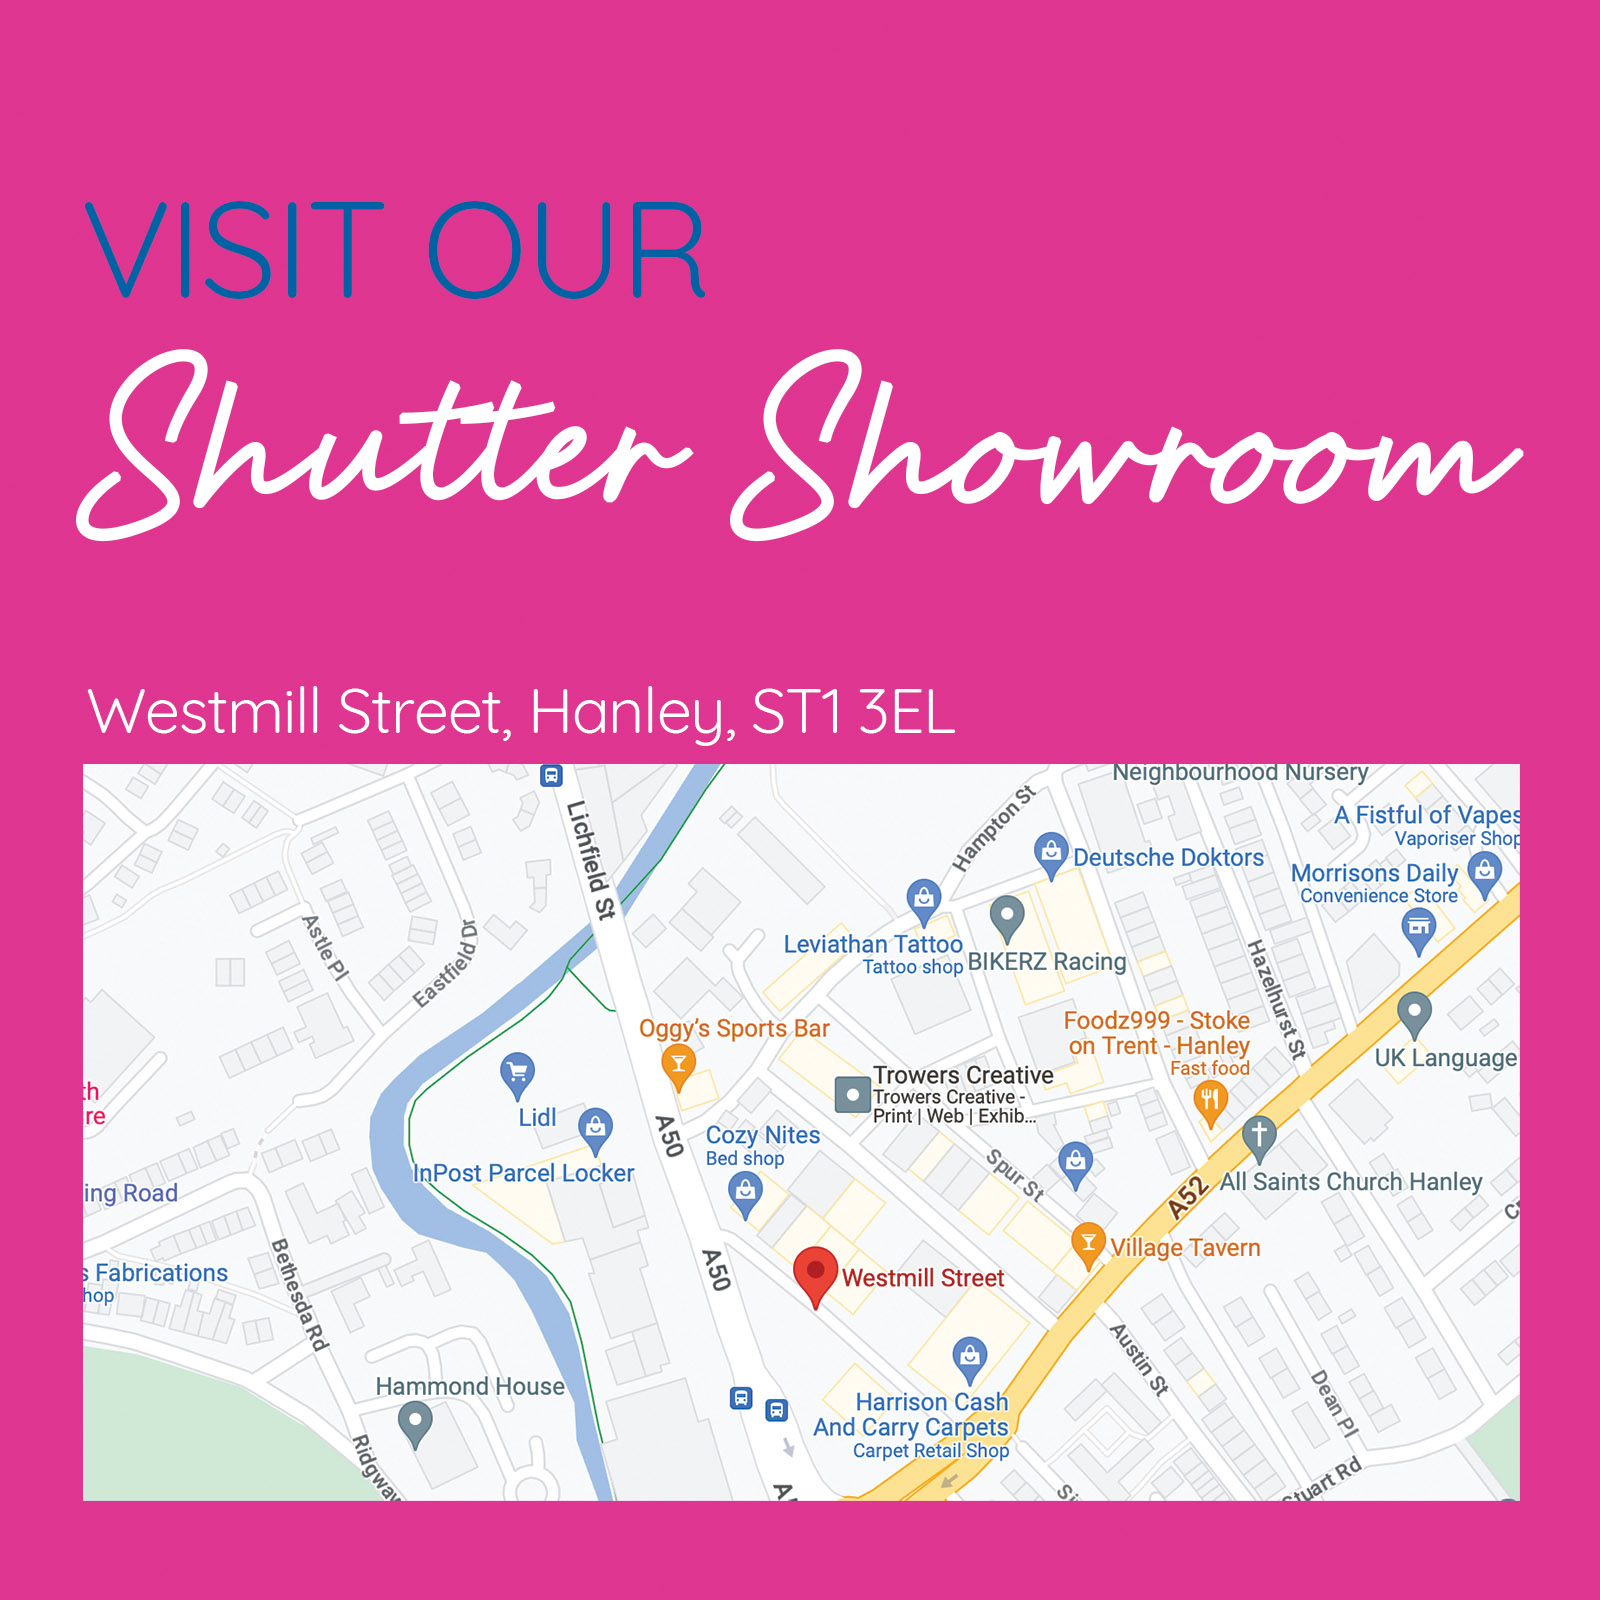 Shutter showroom